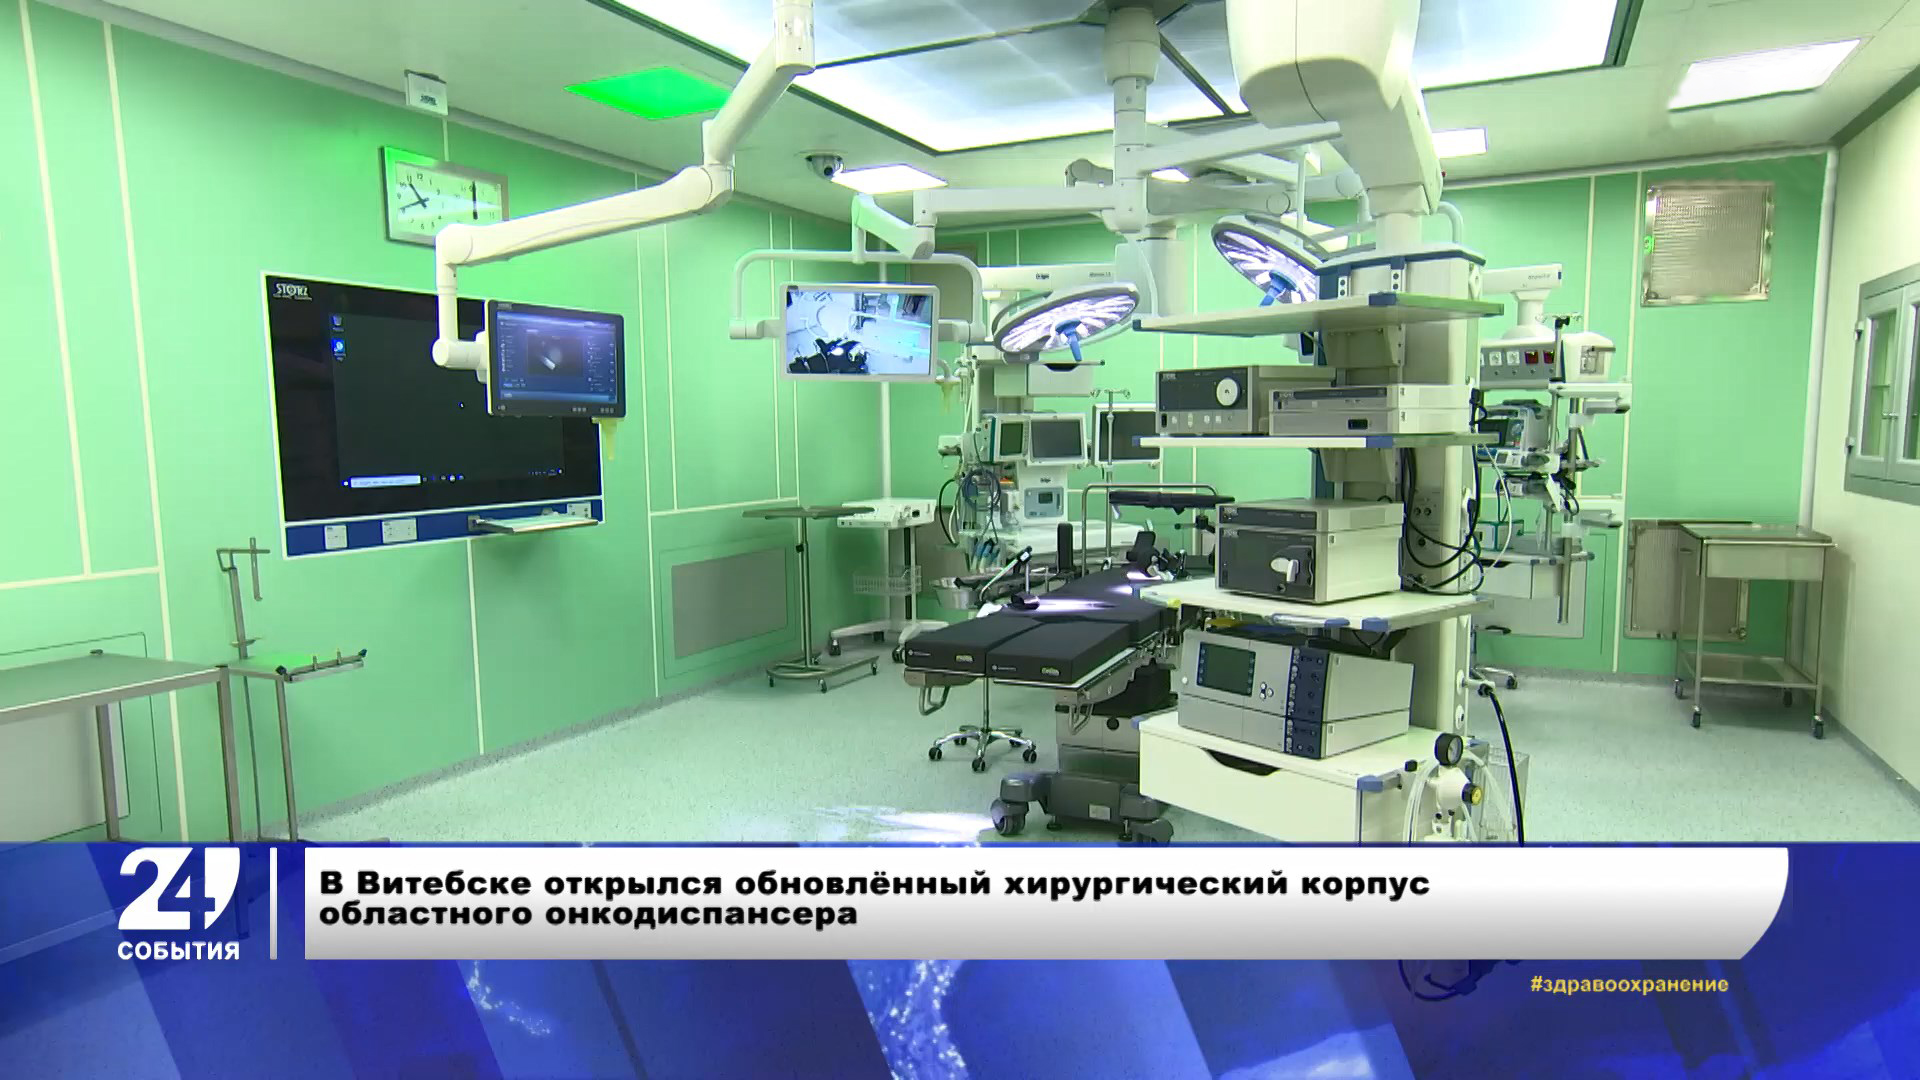 Выпуск пробной вакцины «Cпутник V» и находка золотых монет в центре Минска